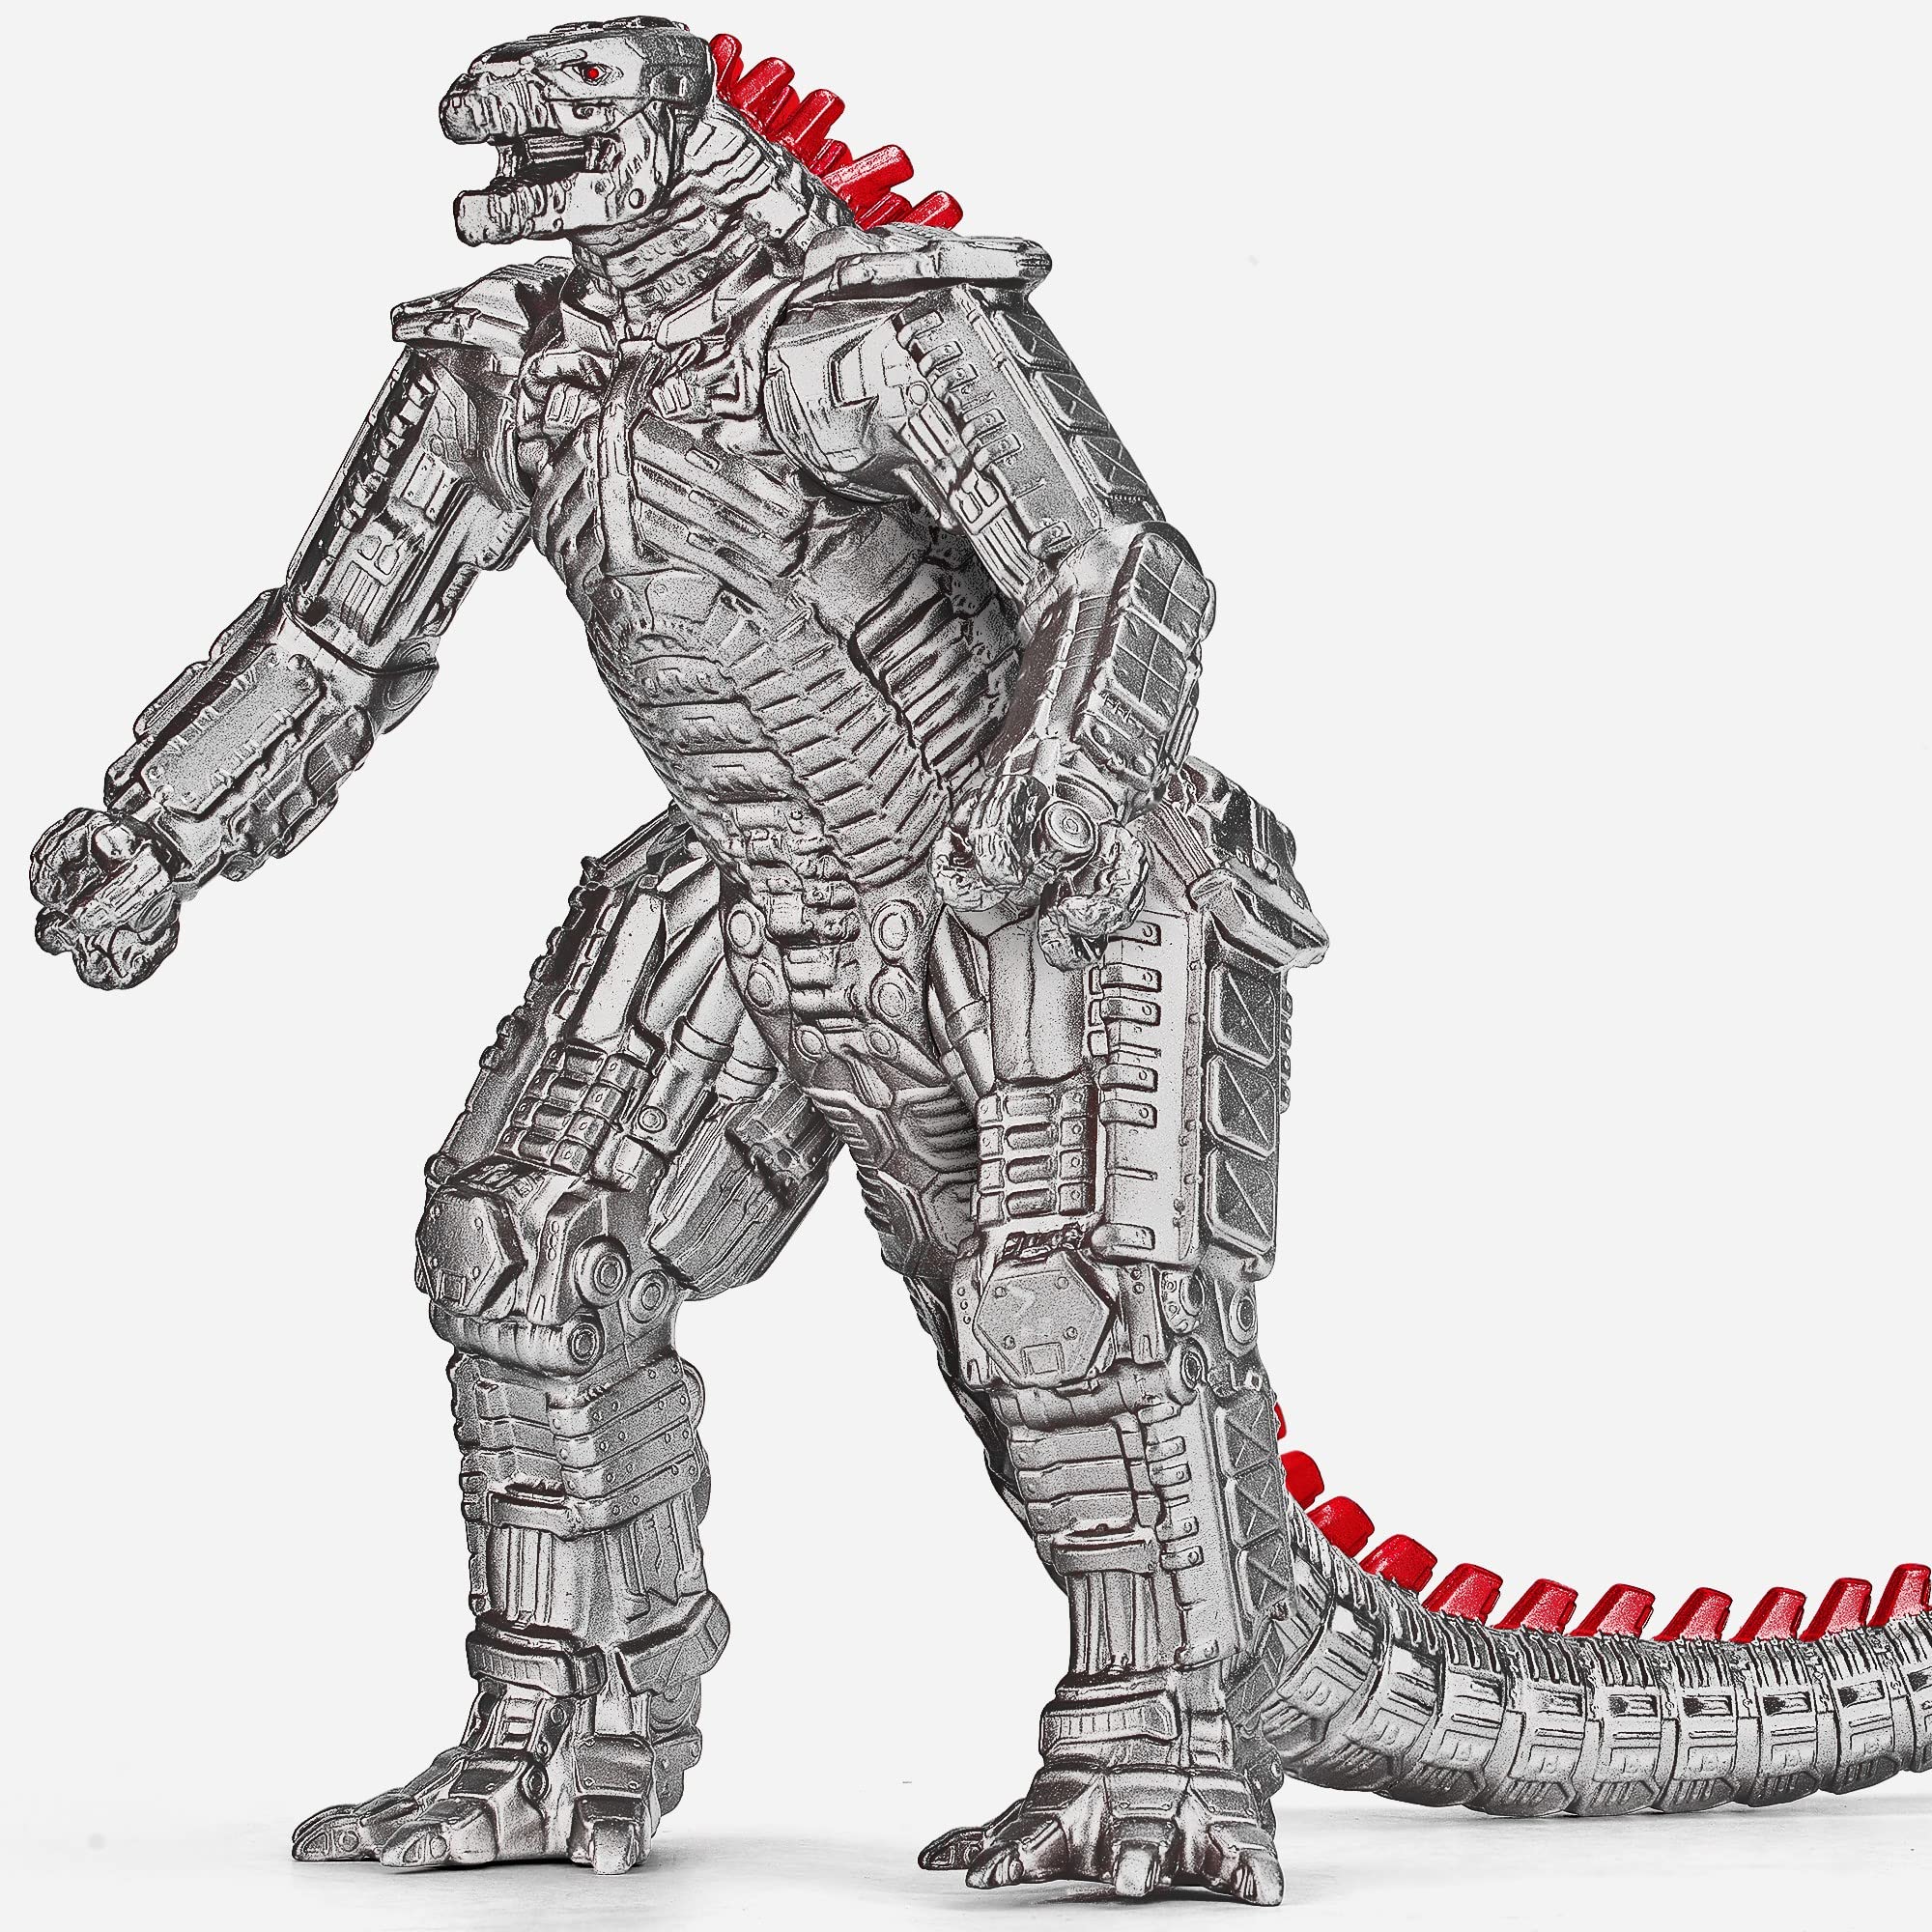 Các fan hâm mộ của Godzilla hãy tới và xem Mechagodzilla Action Figure 10\'\' - King of The Monsters Toy! Siêu phẩm độc đáo này sẽ khiến bạn thật sự mãn nhãn, bởi cả thiết kế và tính năng đều tuyệt vời. Bạn chắc chắn sẽ không muốn bỏ lỡ nó.